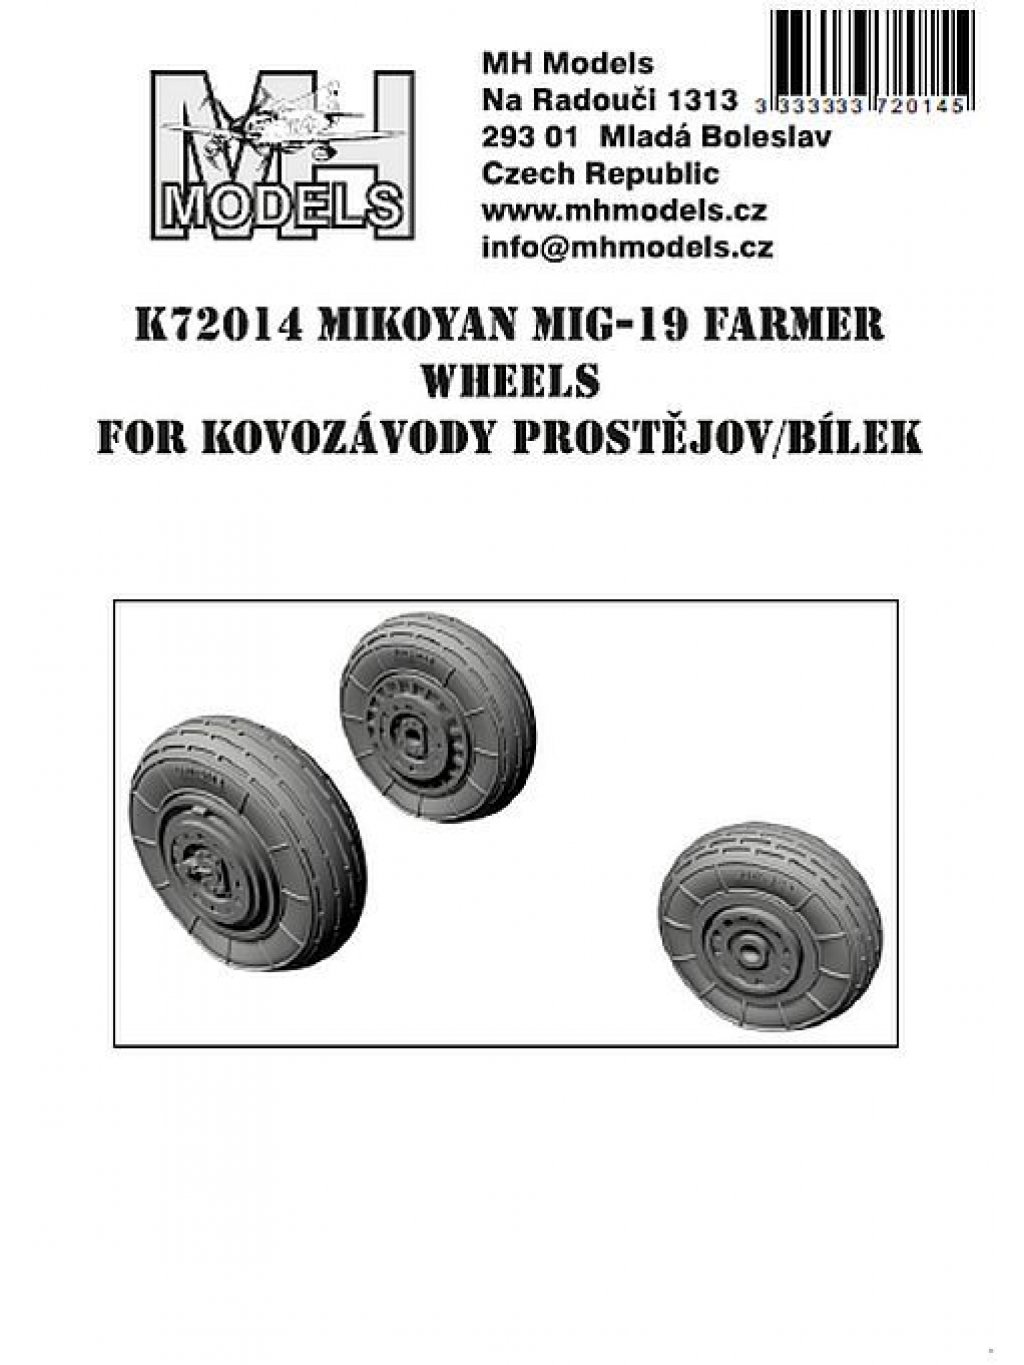 Mig-19 wheels for Kovozávody Prostějov / Bílek